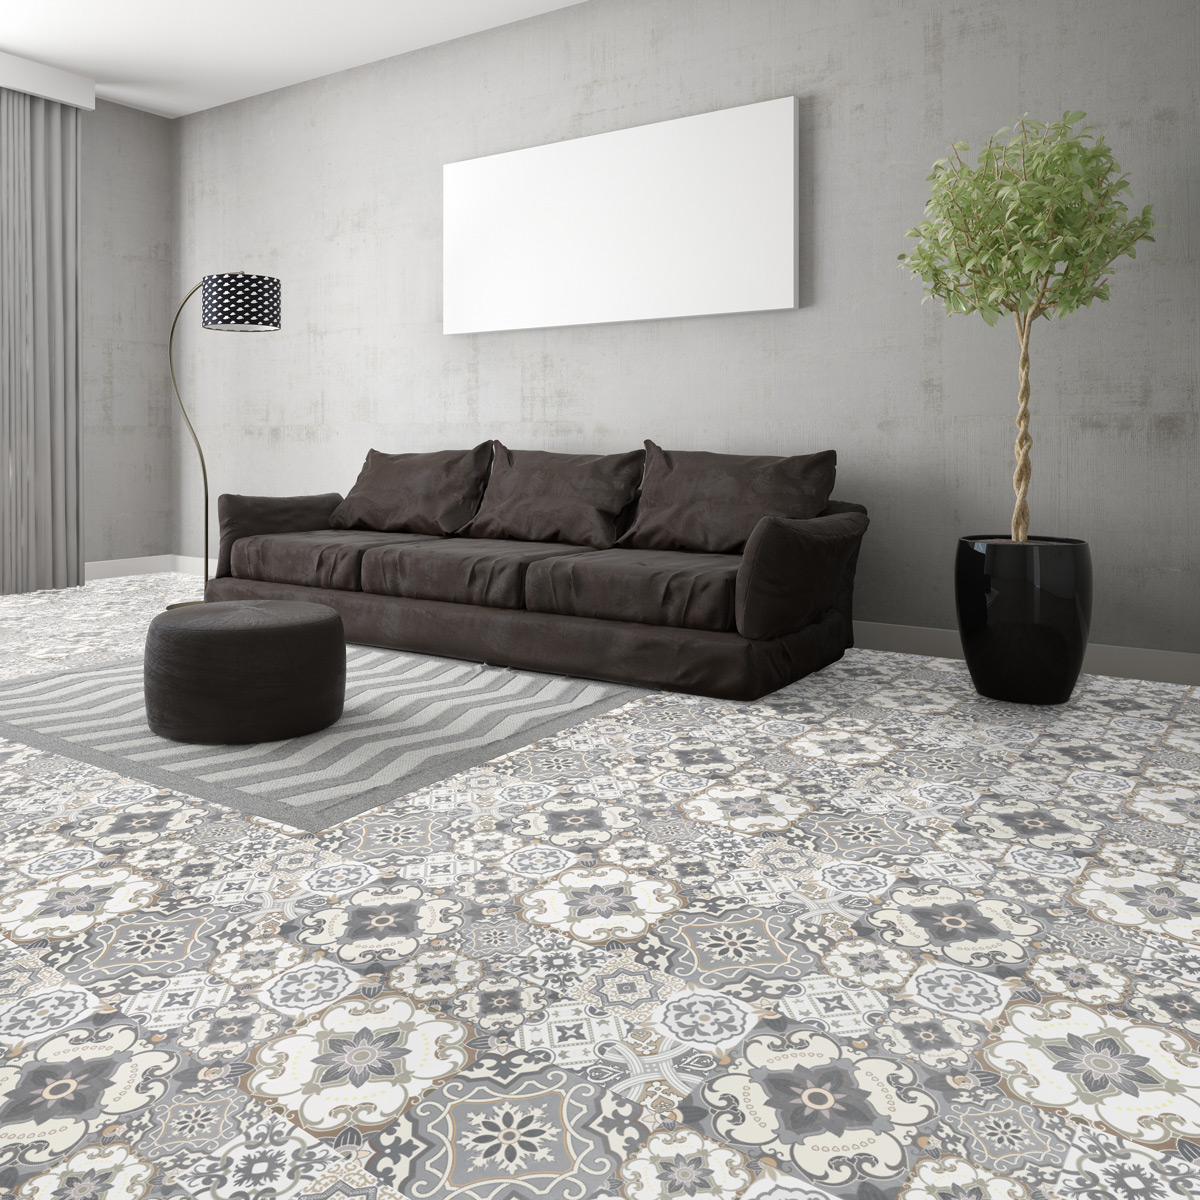 Wall decal cement floor tiles Agapito non-slip - 60 x 90 cm